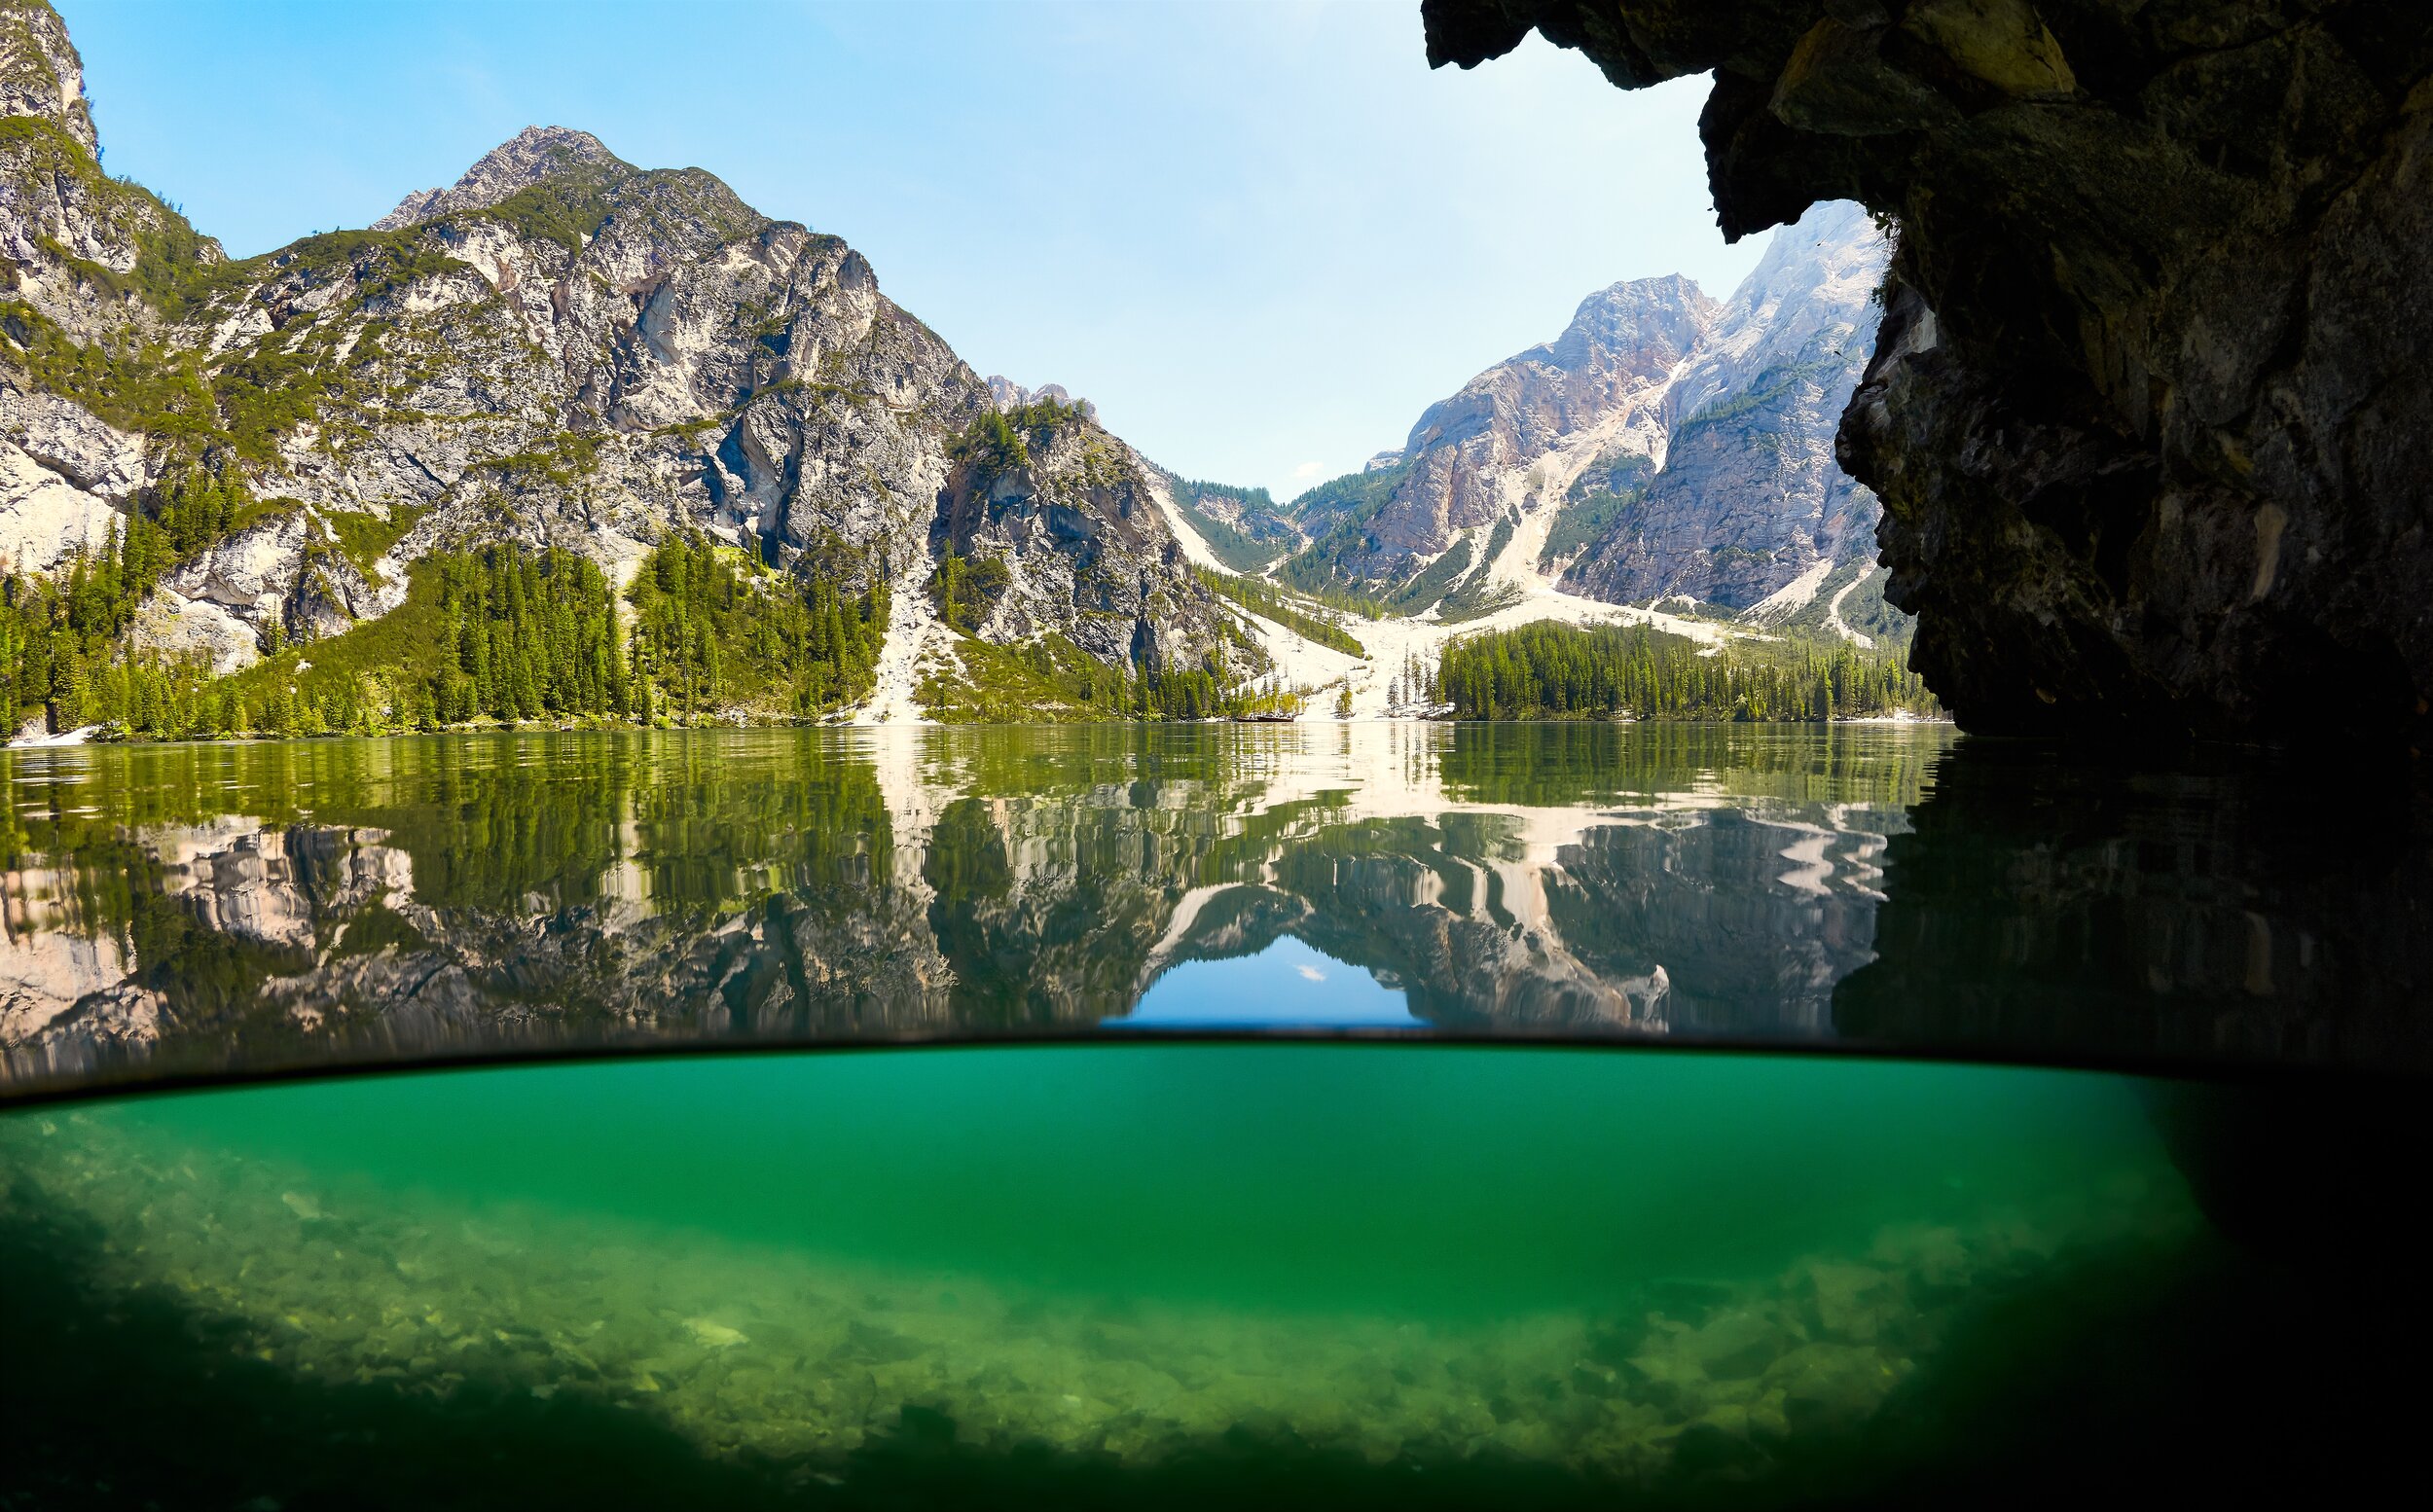 Lago di Braies, South Tyrol